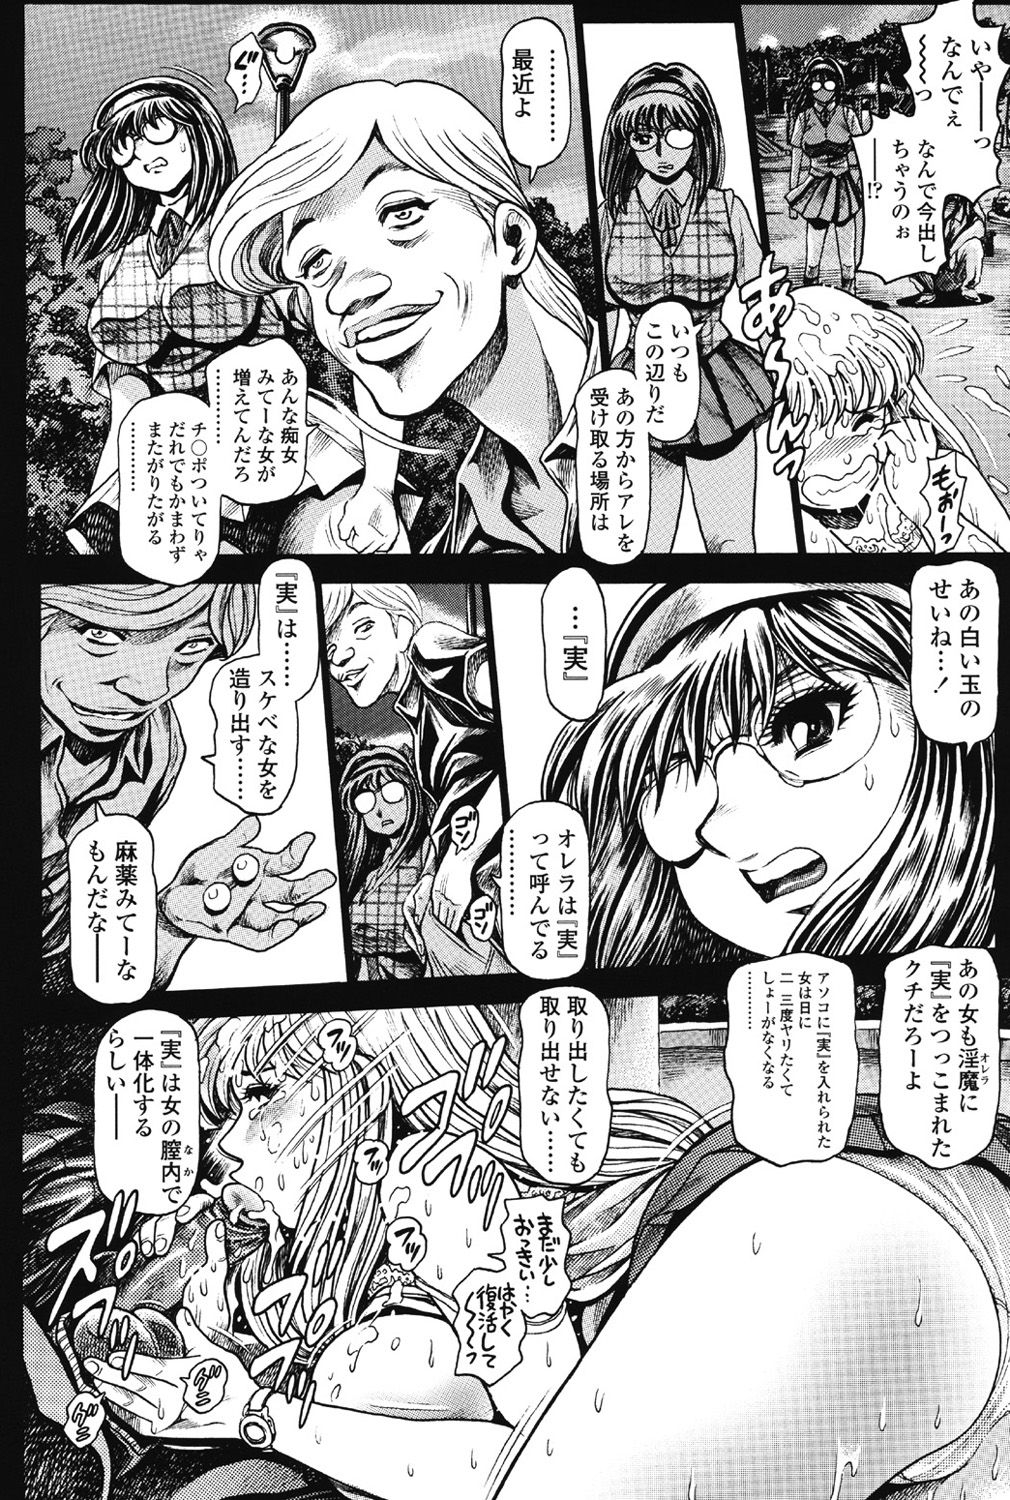 [Chataro] Nami SOS! 5 Previous Story Girls Another Days Keiko - 001 8